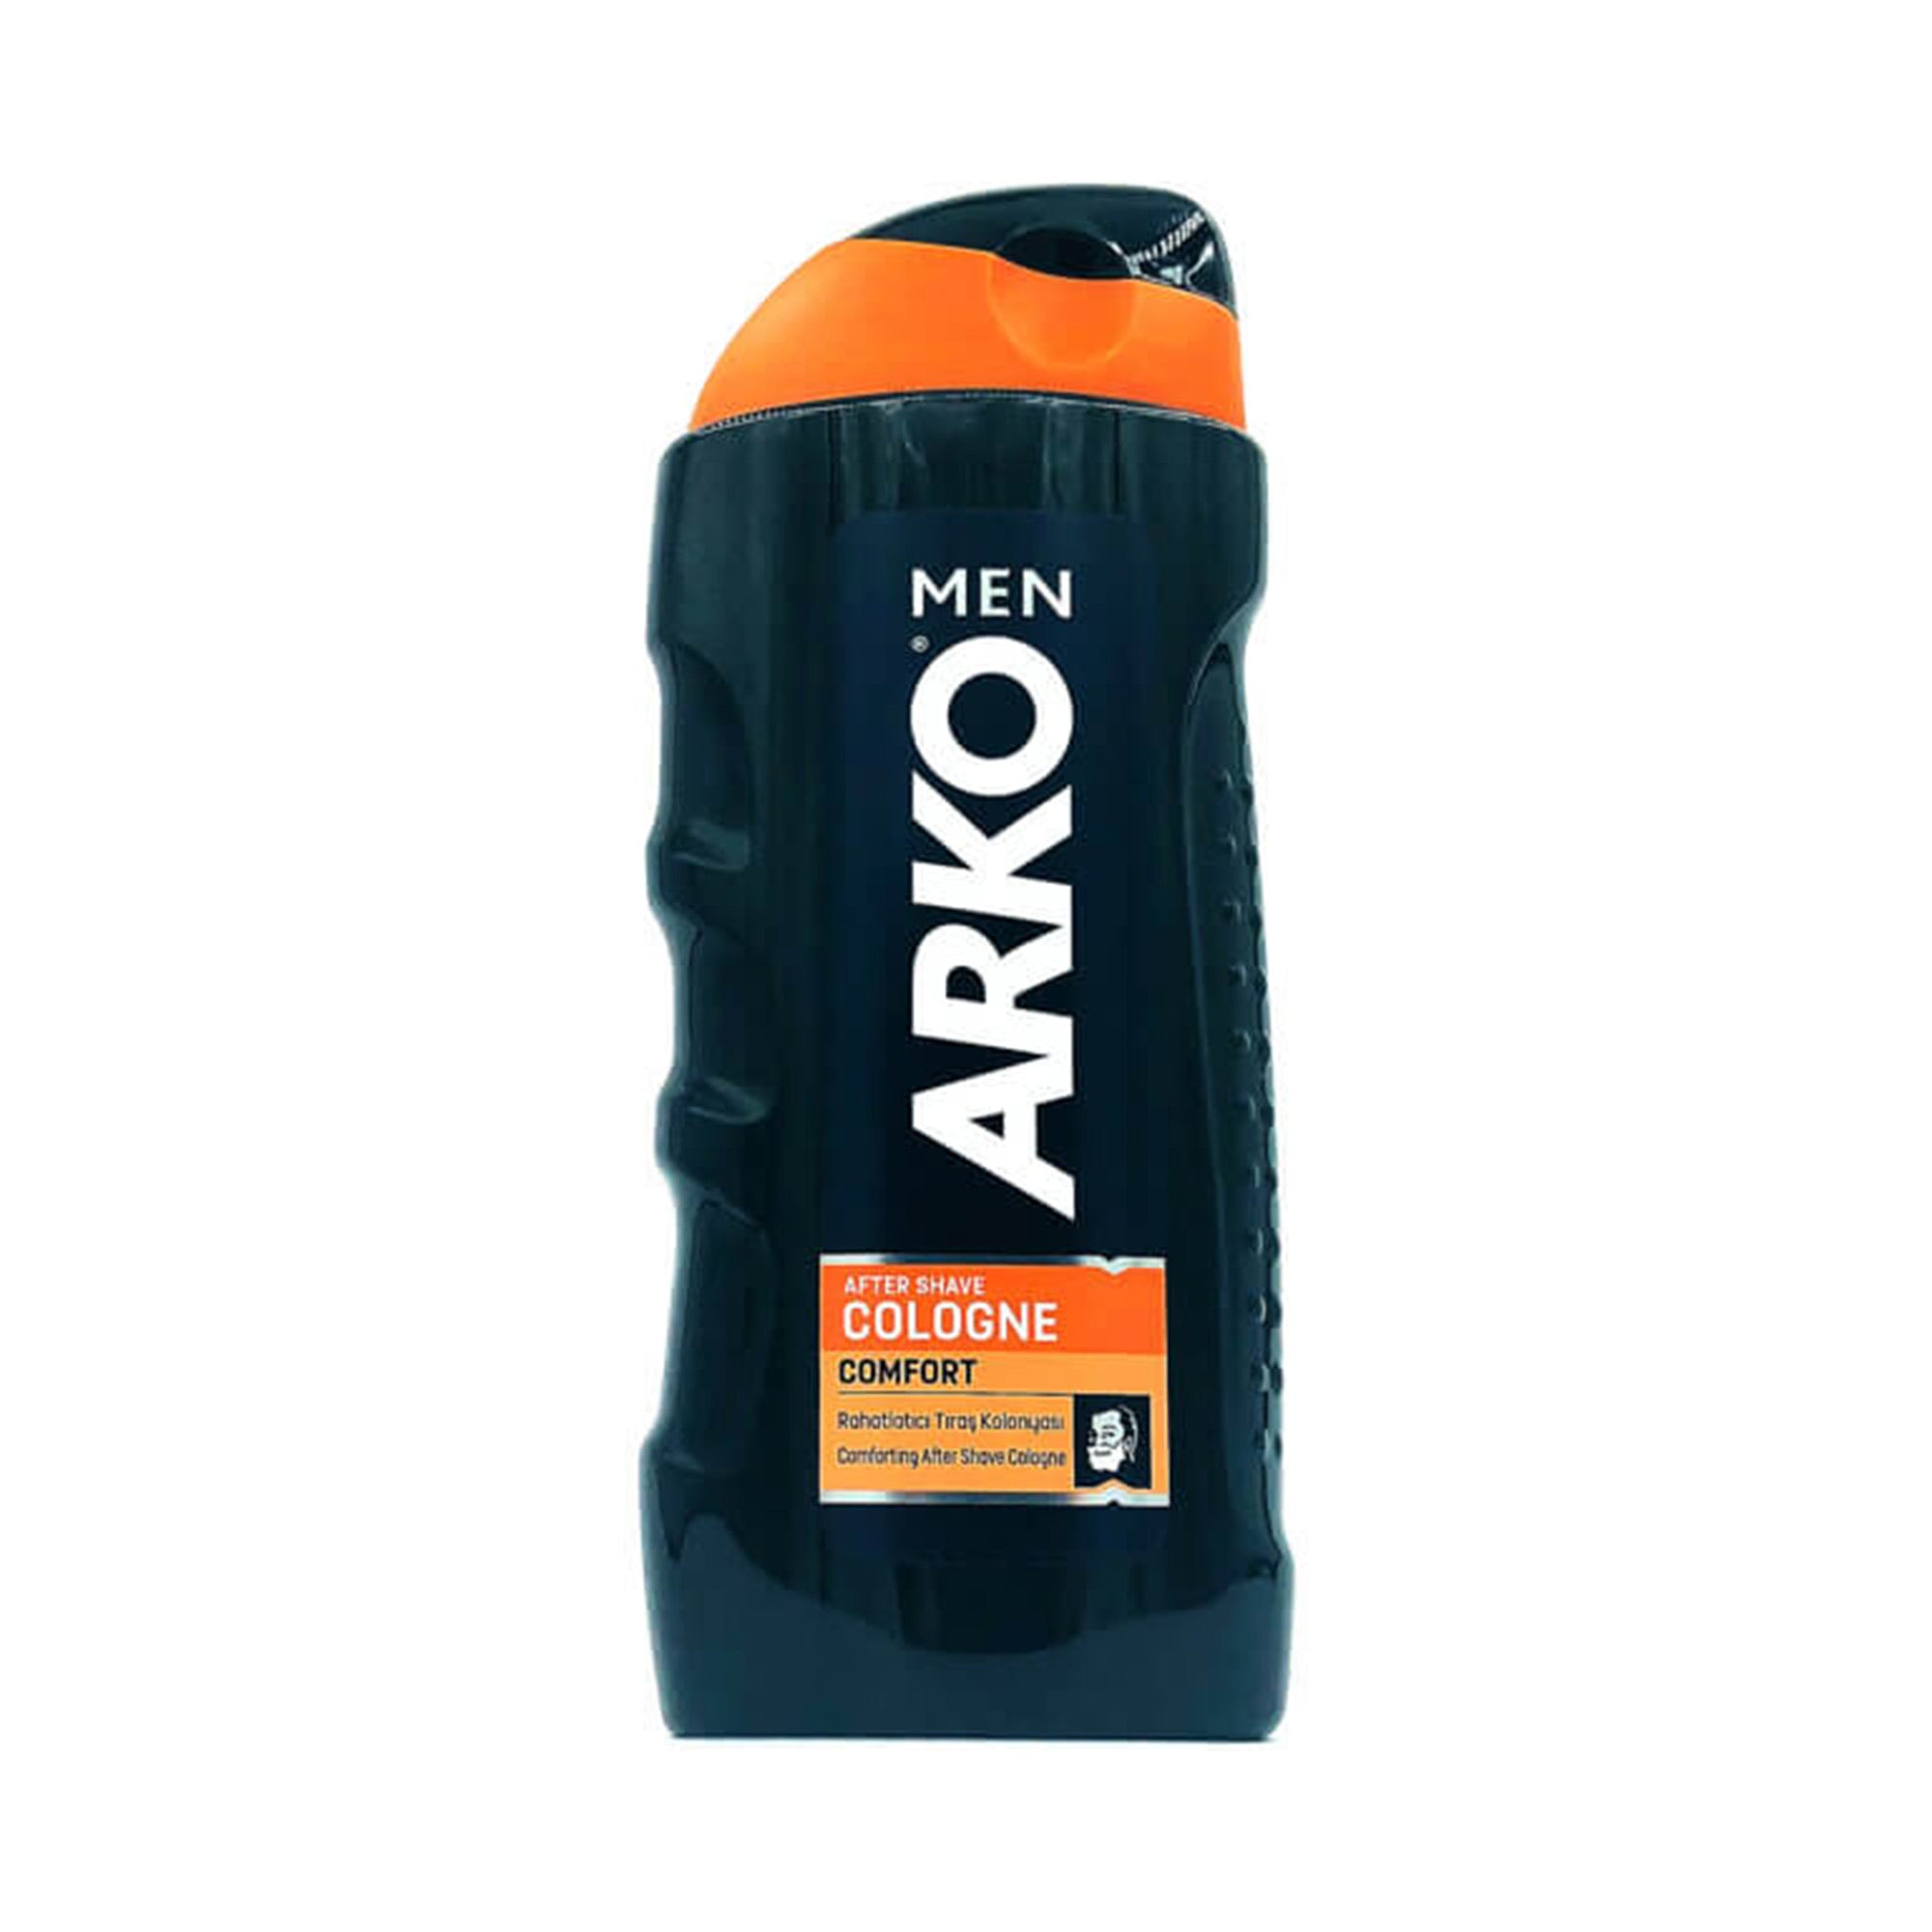 Arko - Men Aftershave Cologne Comfort 250ml - Eson Direct